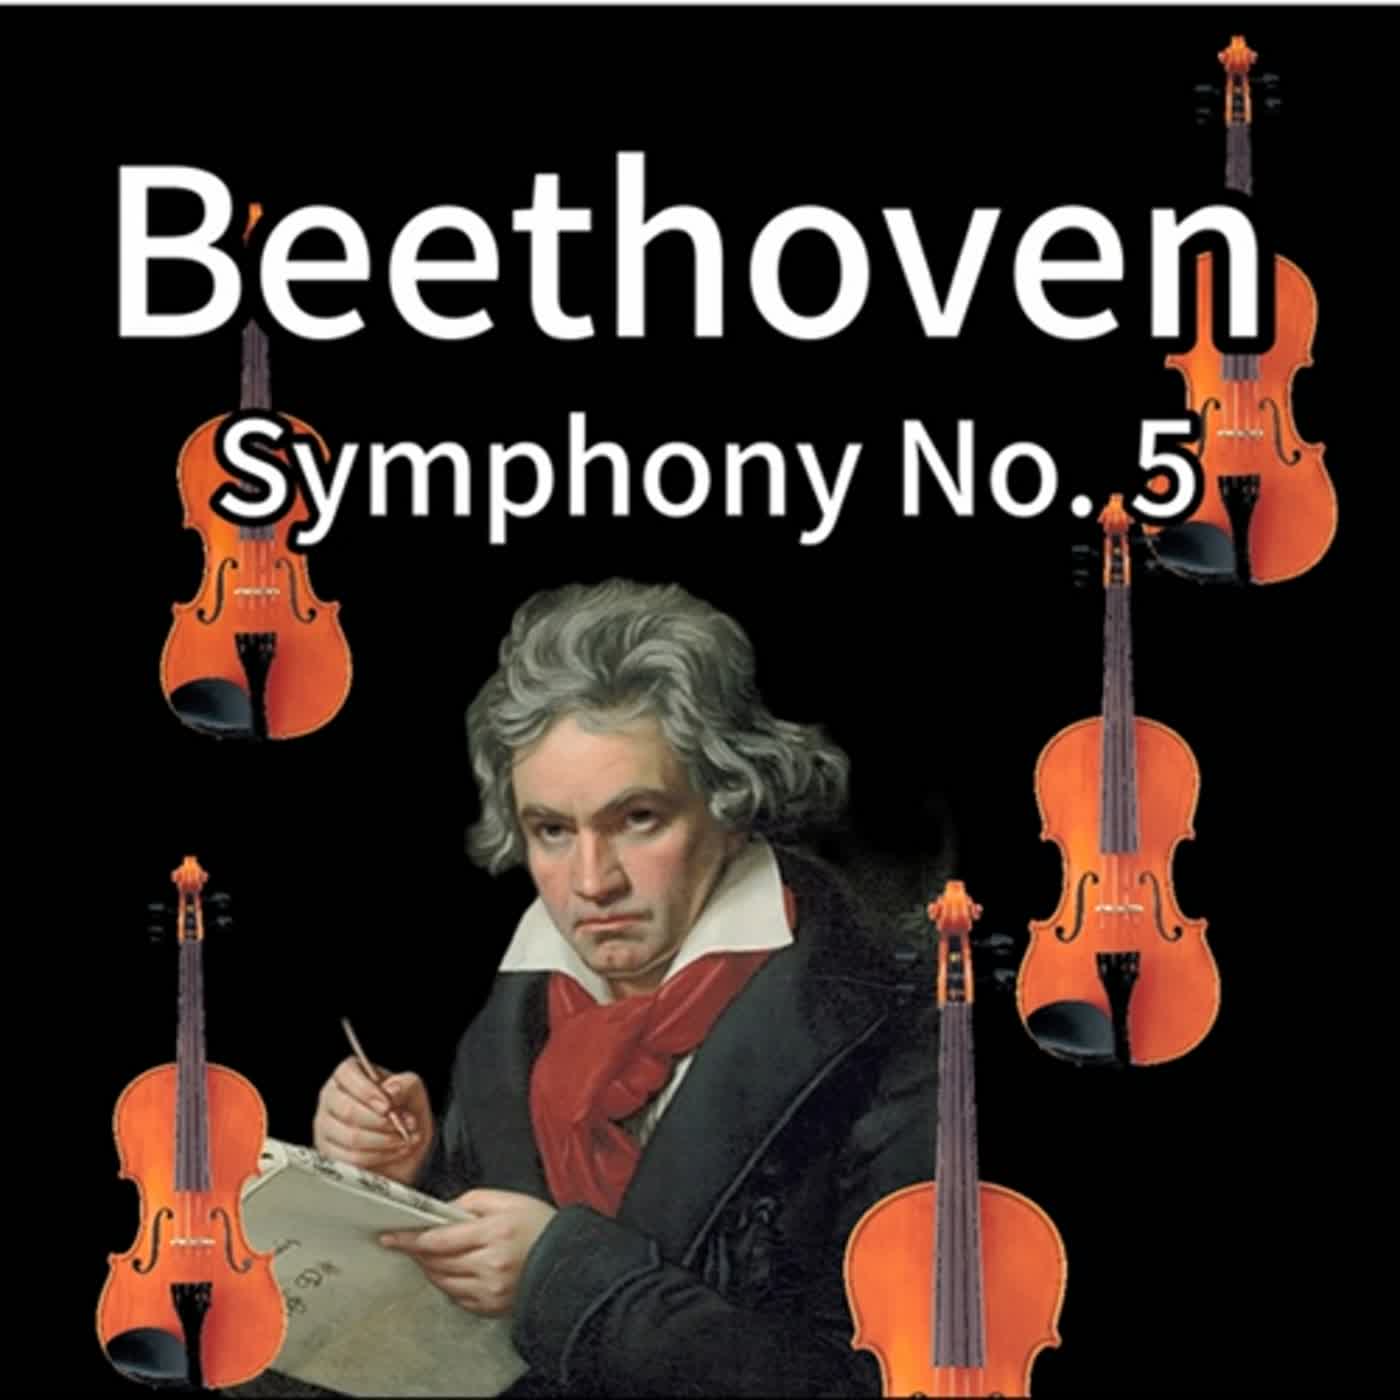 🎺 推薦: KKBOX -  🧑 貝多芬  🎻第五號交響曲 🎹《命運交響曲》- Beethoven's 5th Symphony  | 🎼電鋼琴版 | 四個樂章 | 34 分鐘 55秒（需登錄KKBOX）